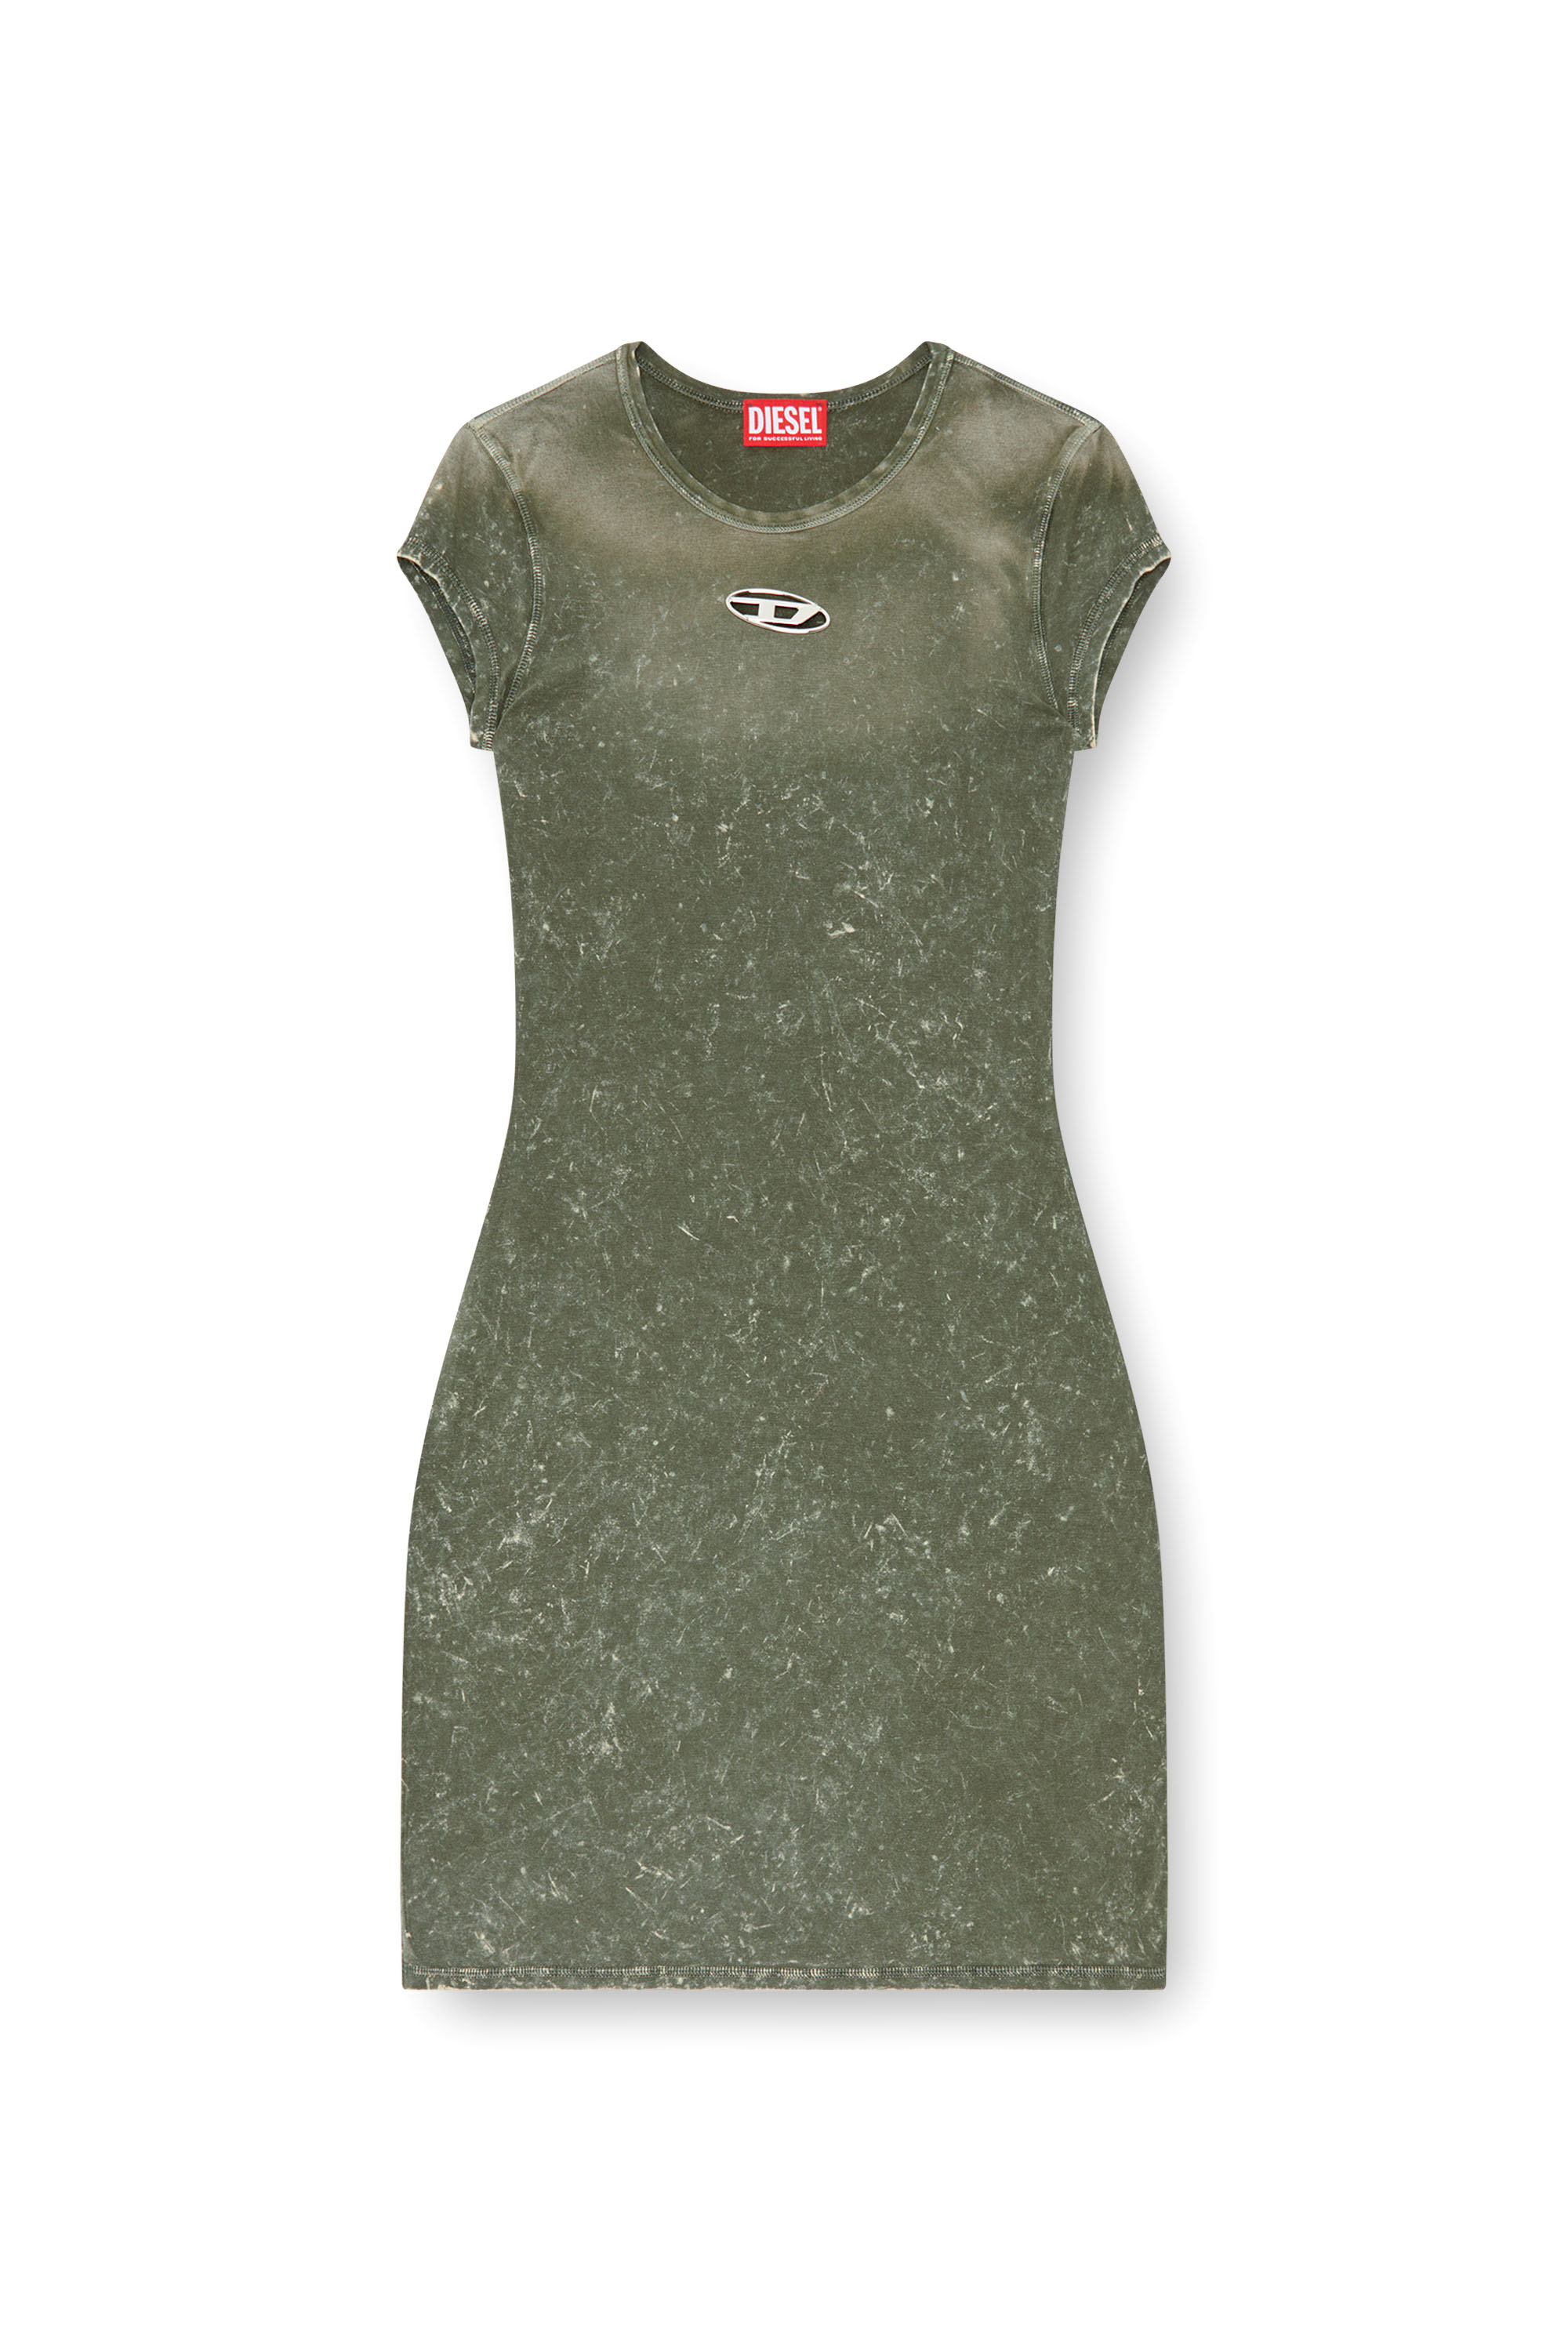 Diesel - D-ANGIEL-P1, Mujer Vestido corto de tejido elástico tipo mármol in Verde - Image 1